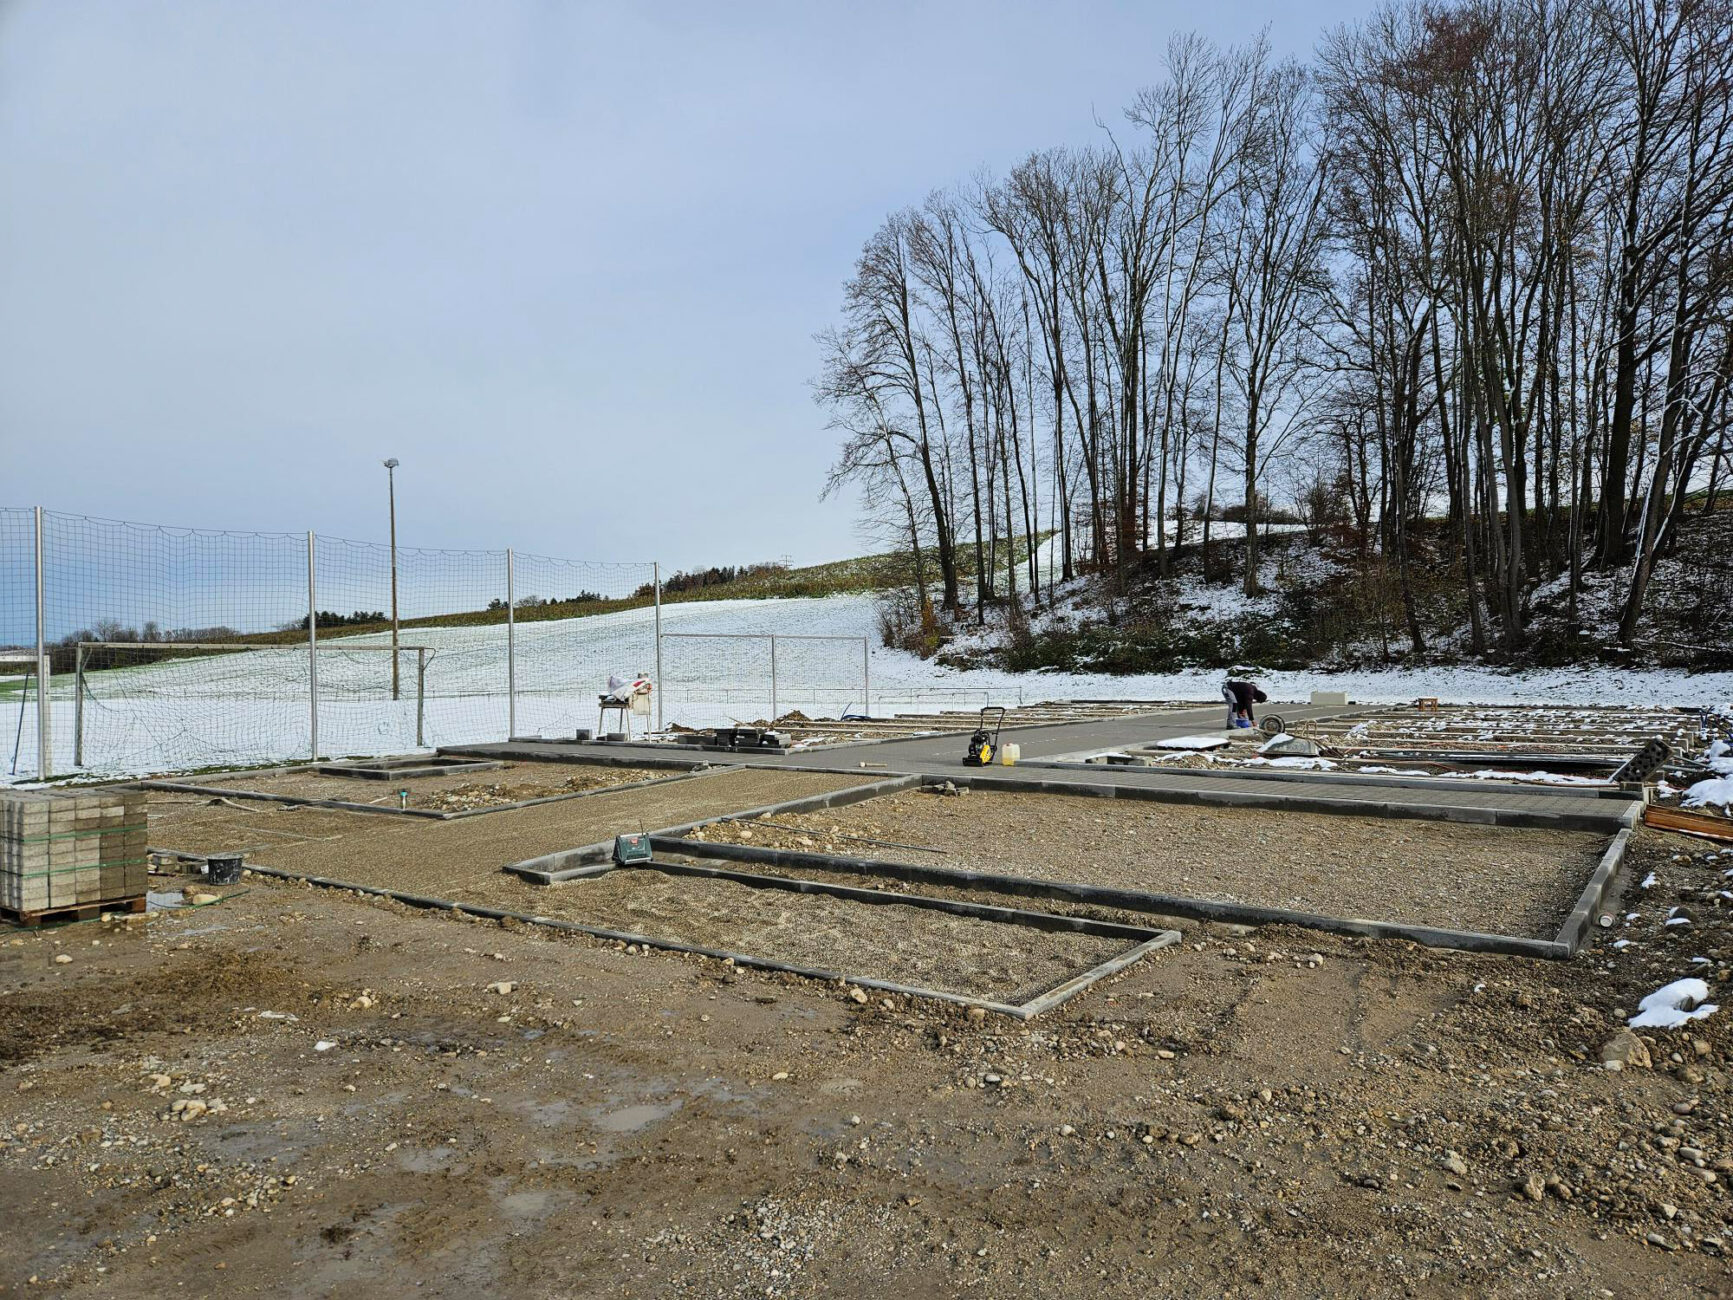 KFB baute Wohnheim für Flüchtlinge in St. Wolfgang in Rekordzeit - 200 Meter Rohre für Kanal und Wasser